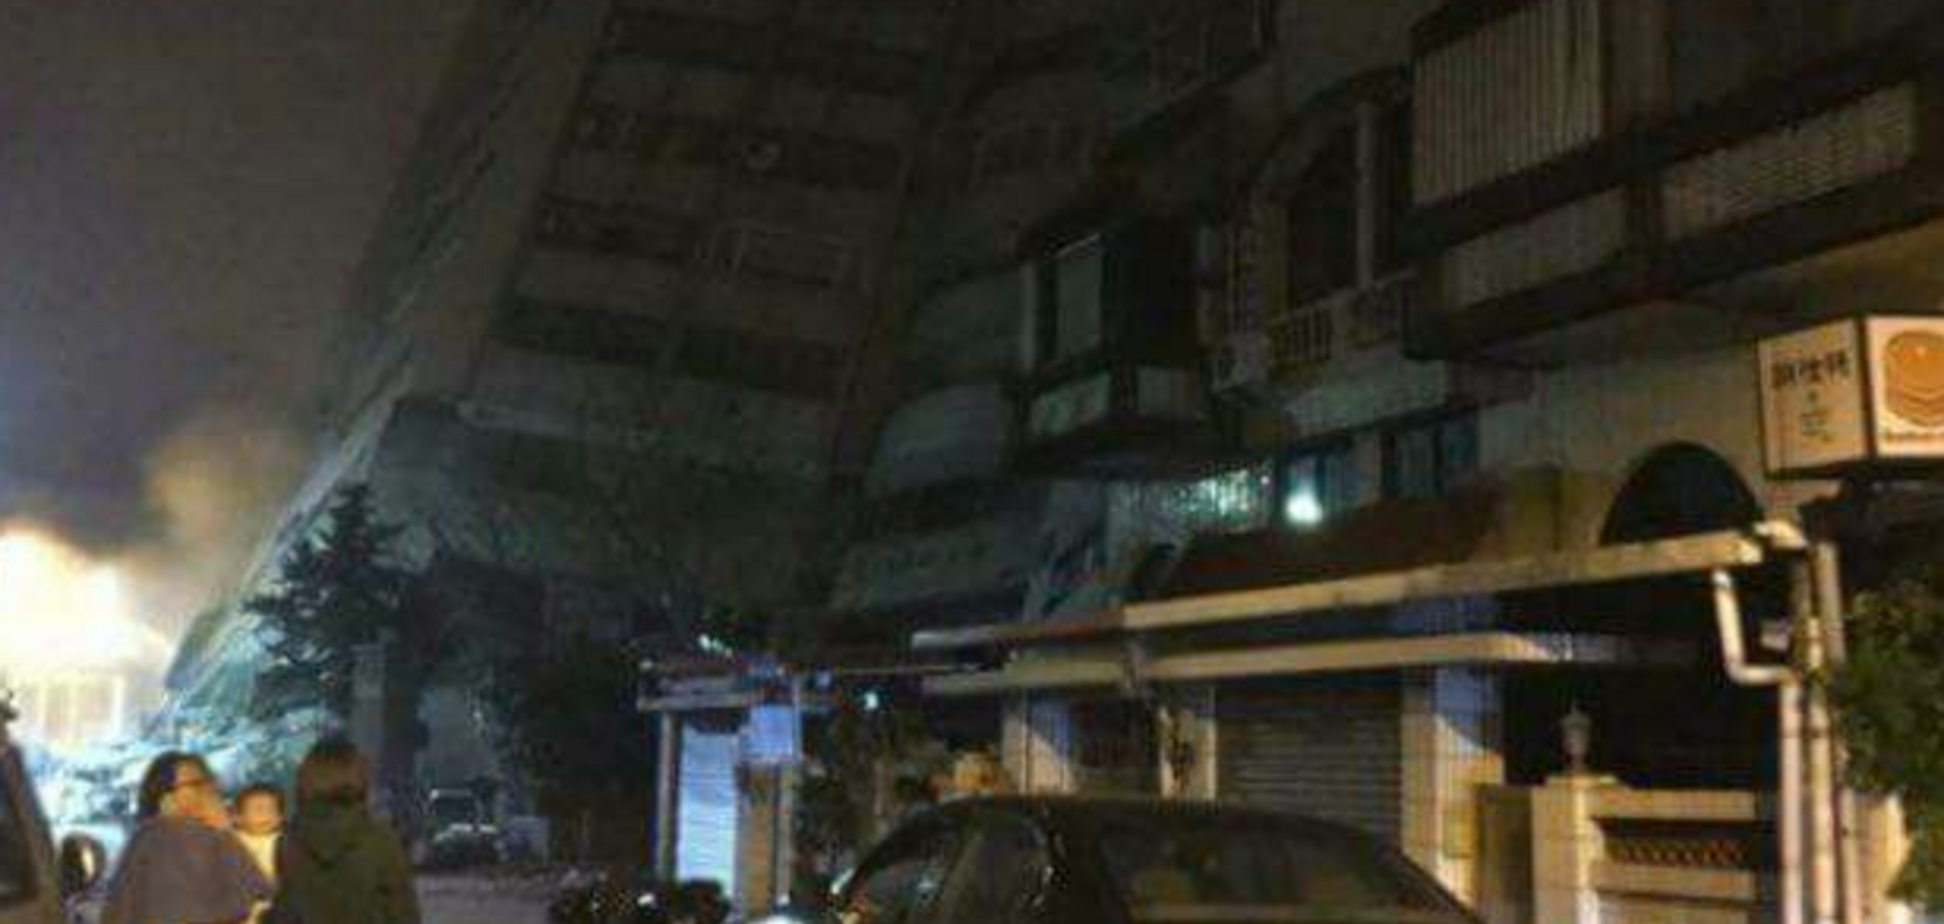 На Тайване произошло землетрясение: есть жертвы, более 100 раненых